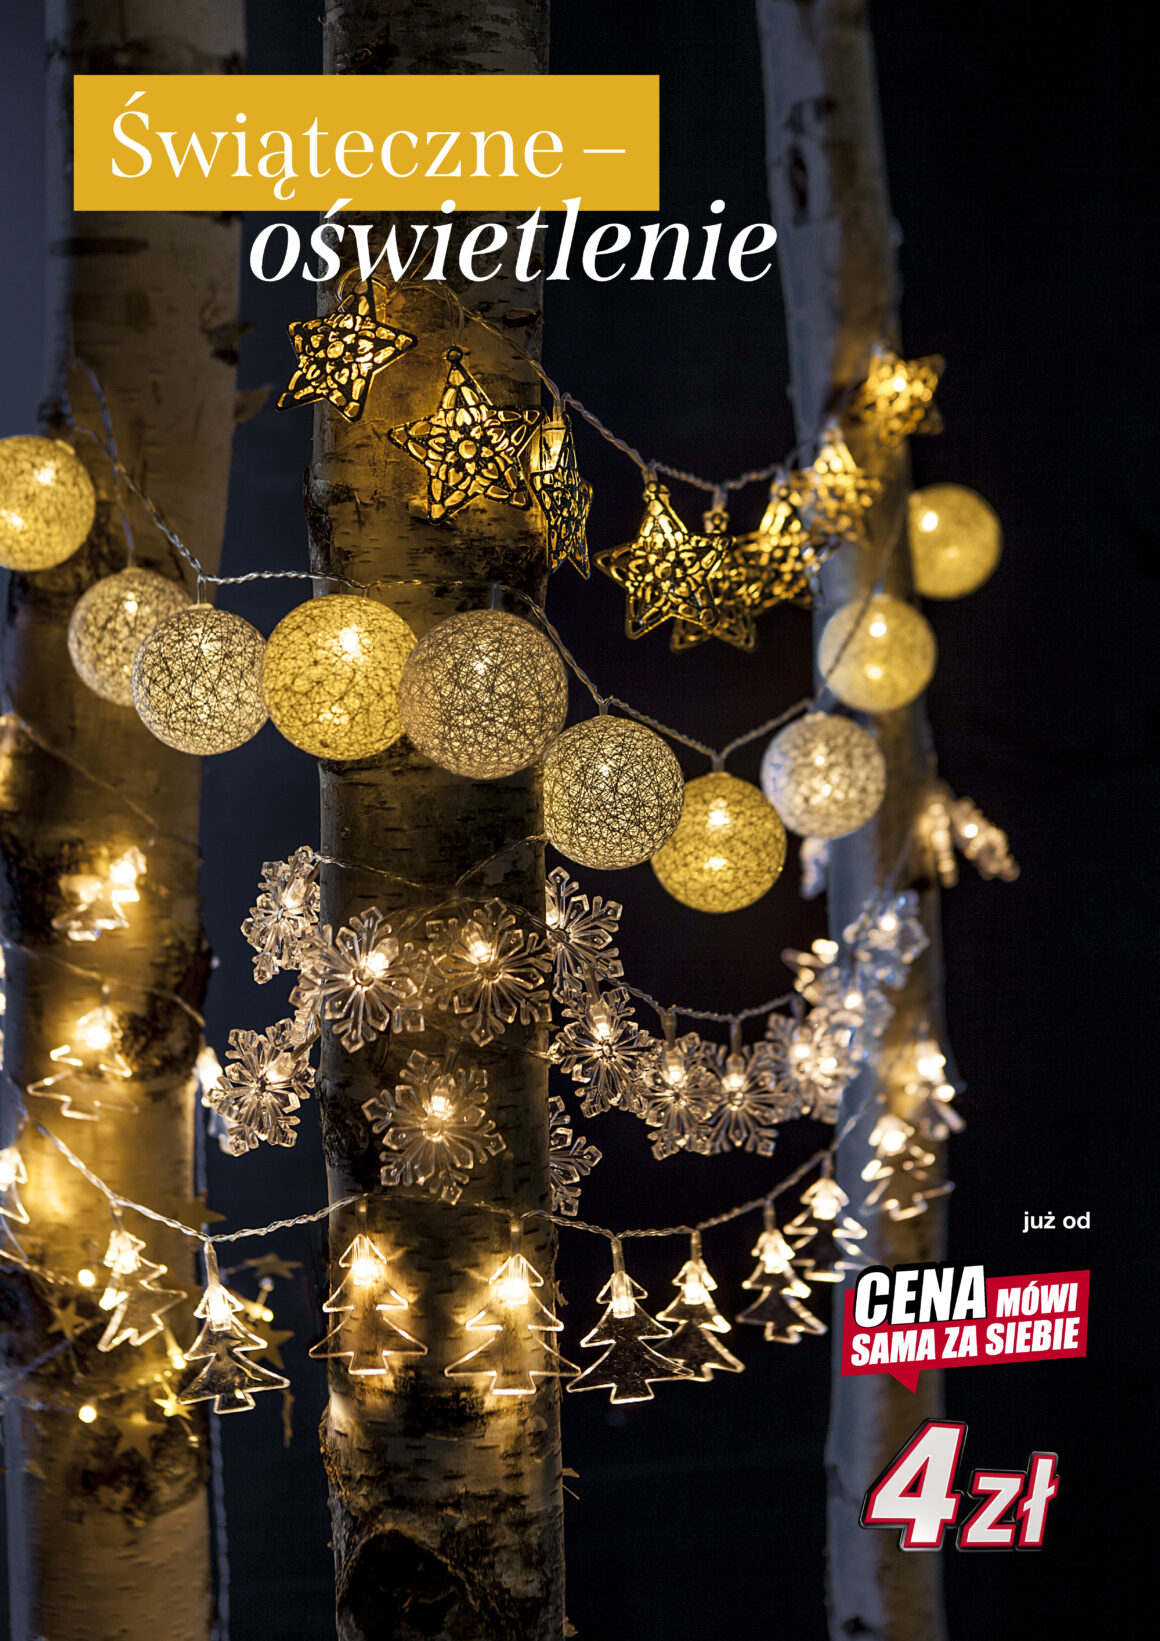 Długo wyczekiwane dekoracje świąteczne już są w KiK! 🤶🏻 #gazetkaKiK